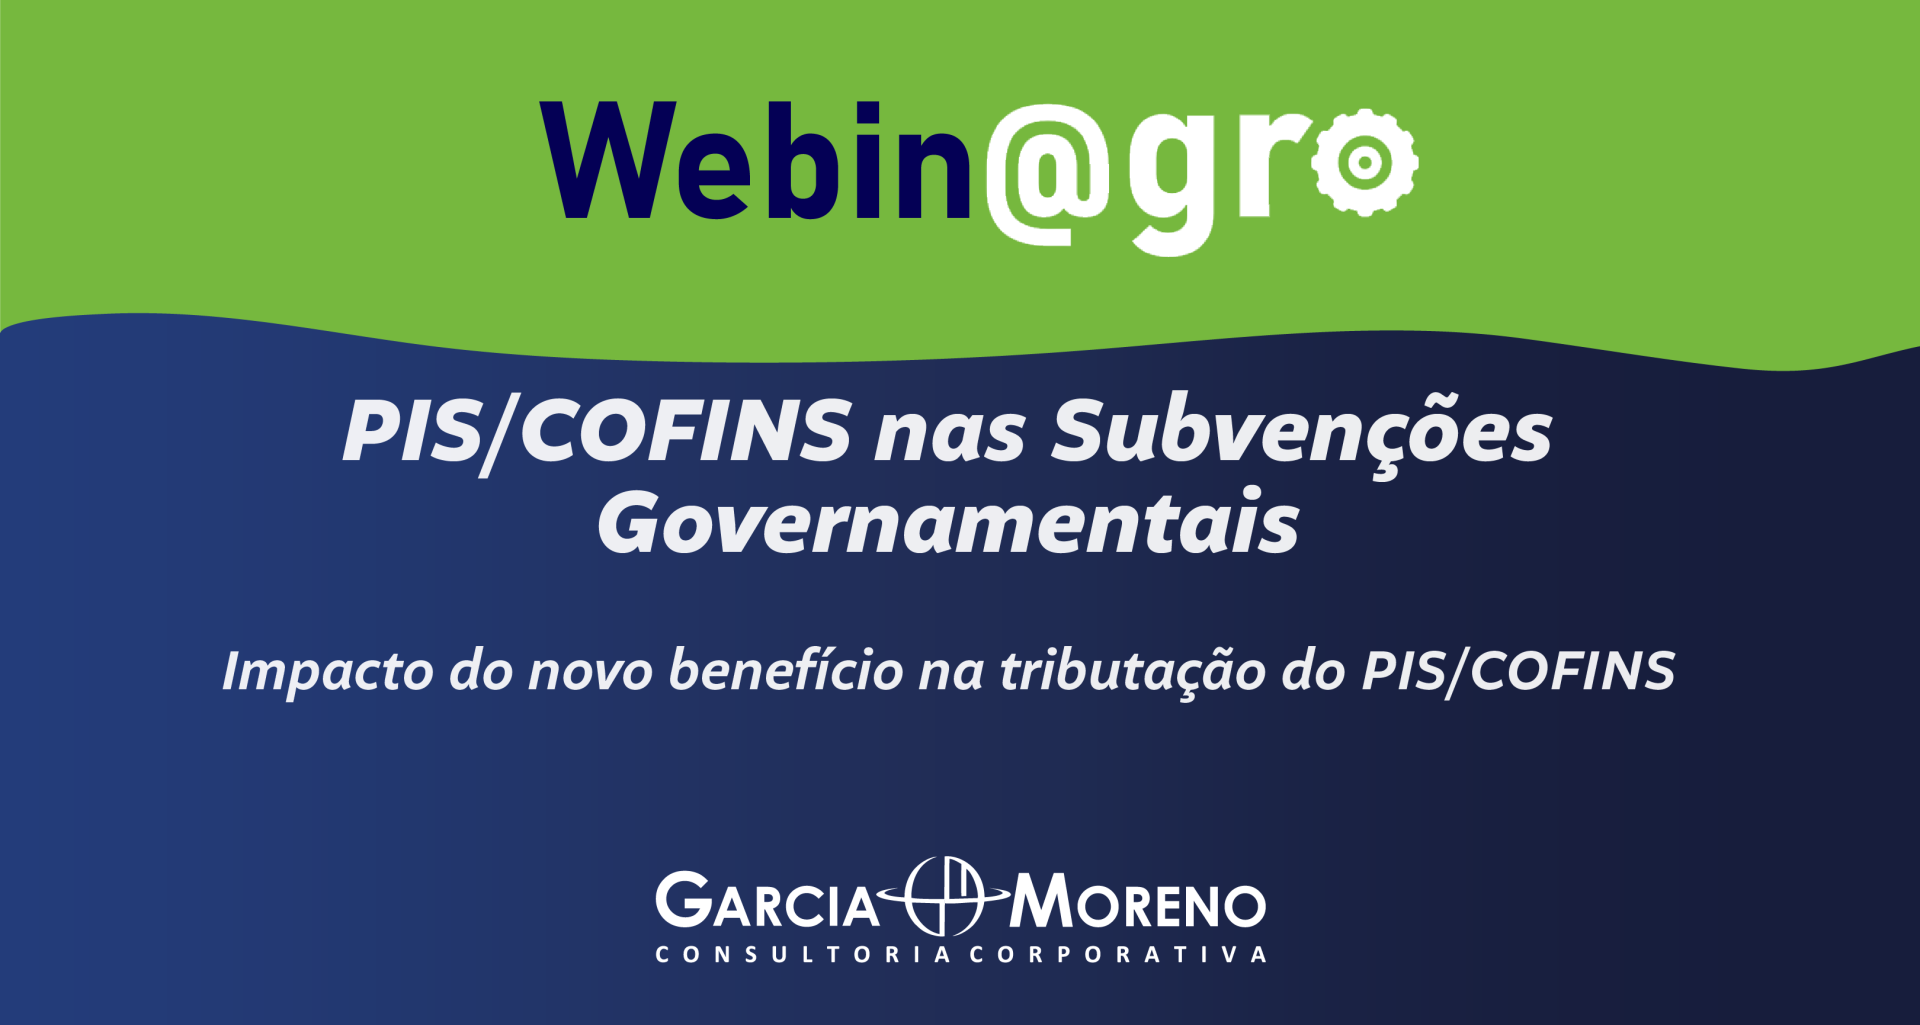 Webinagro: Tributação do PIS/COFINS sobre as Subvenções após alterações legislativas Não listado